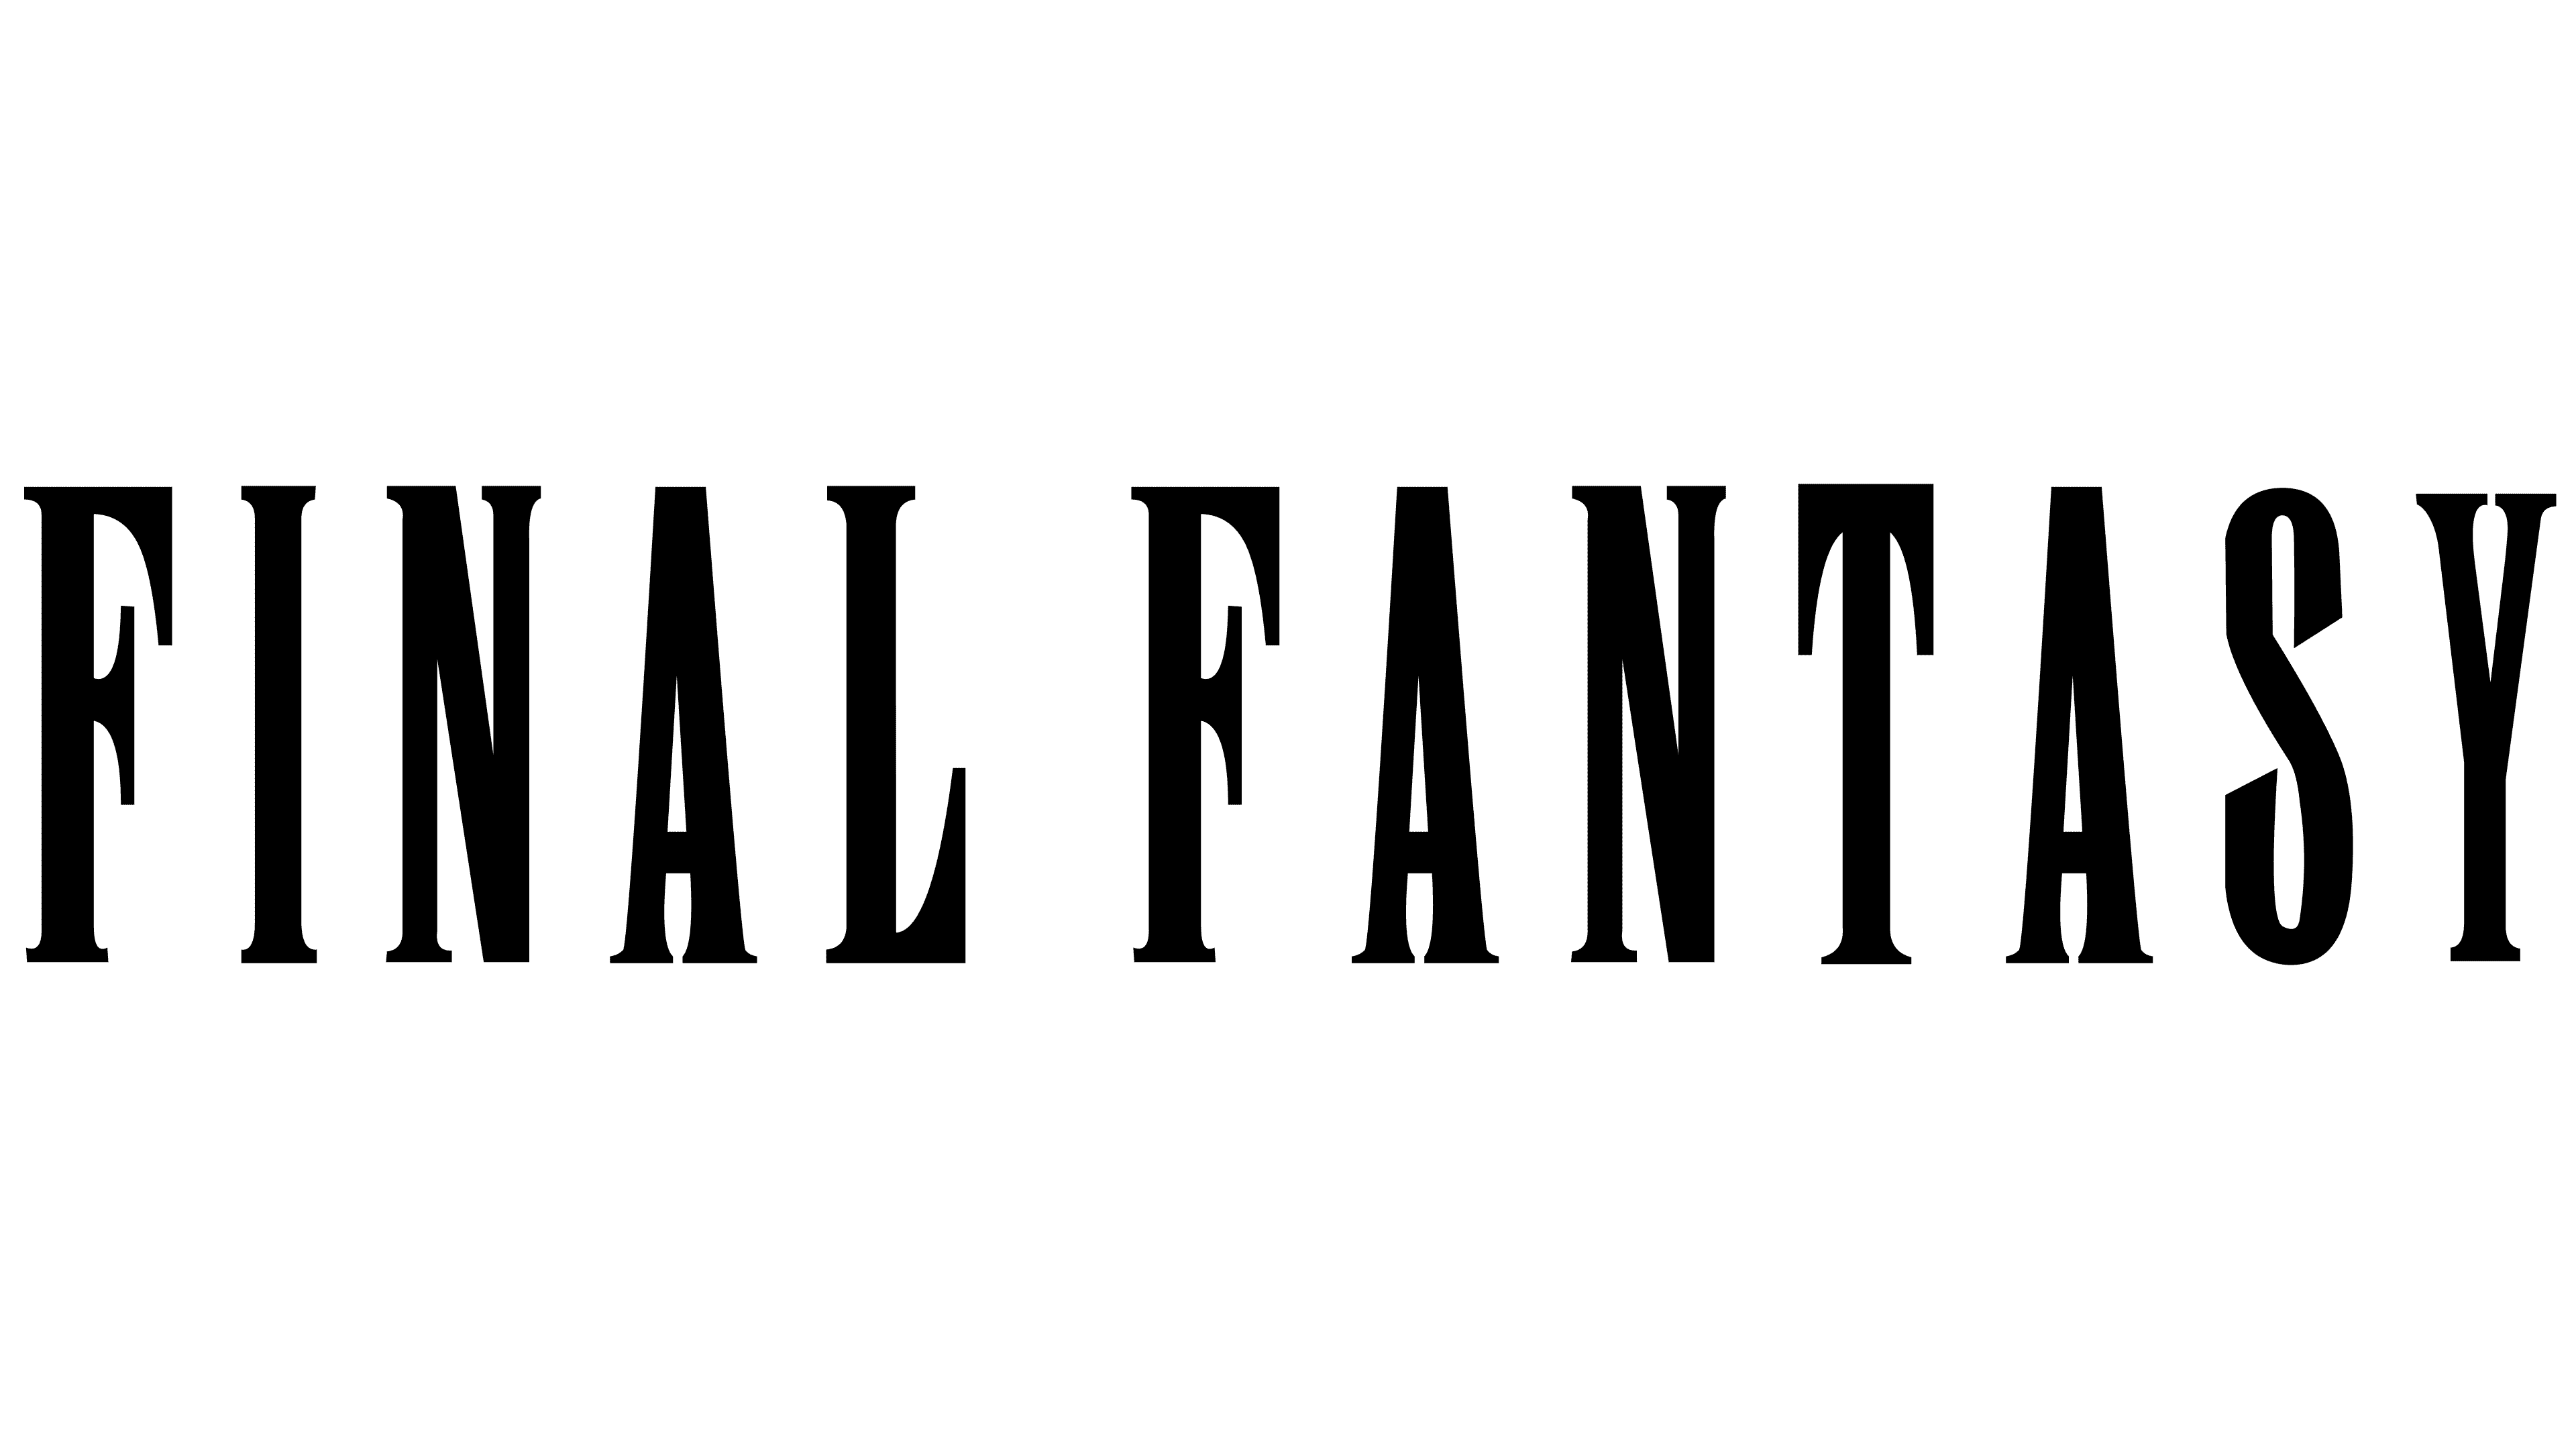 Final Fantasy Logo Png - KibrisPDR